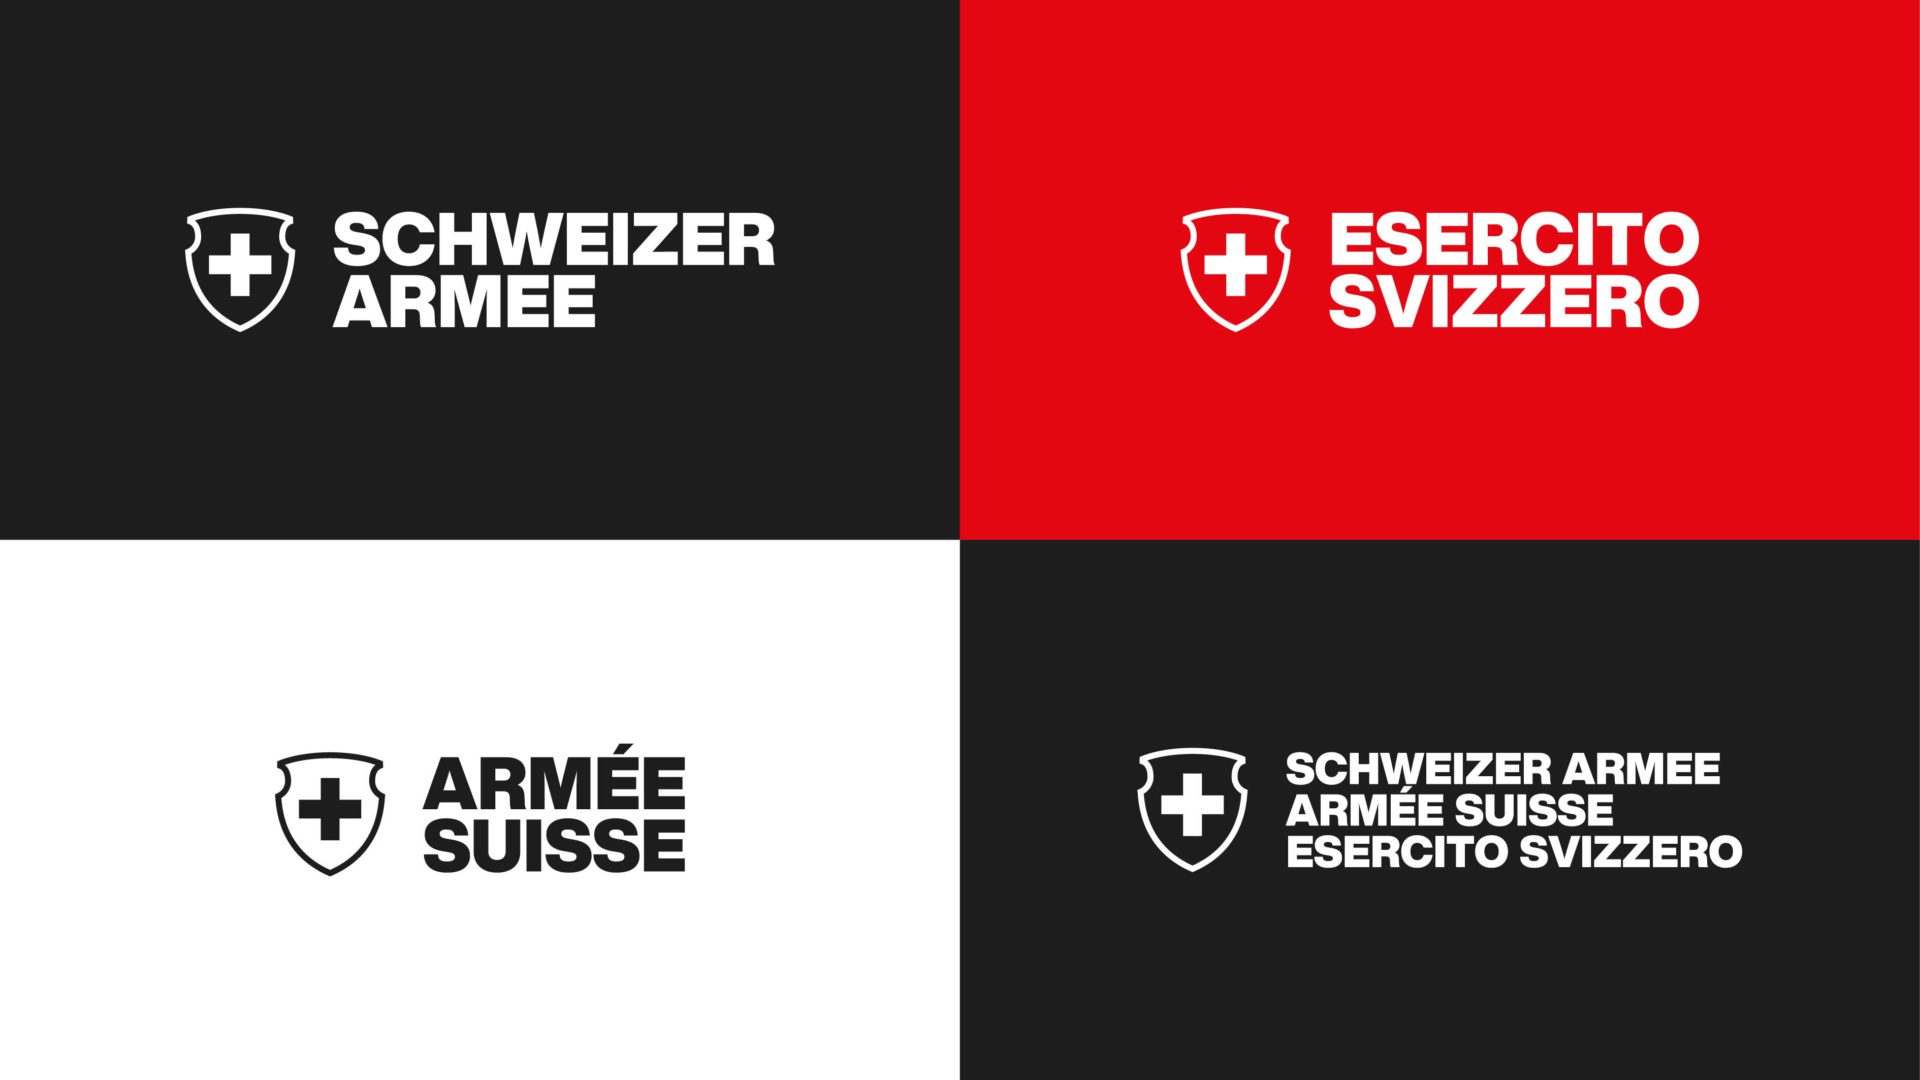 Schweizer_Armee_2